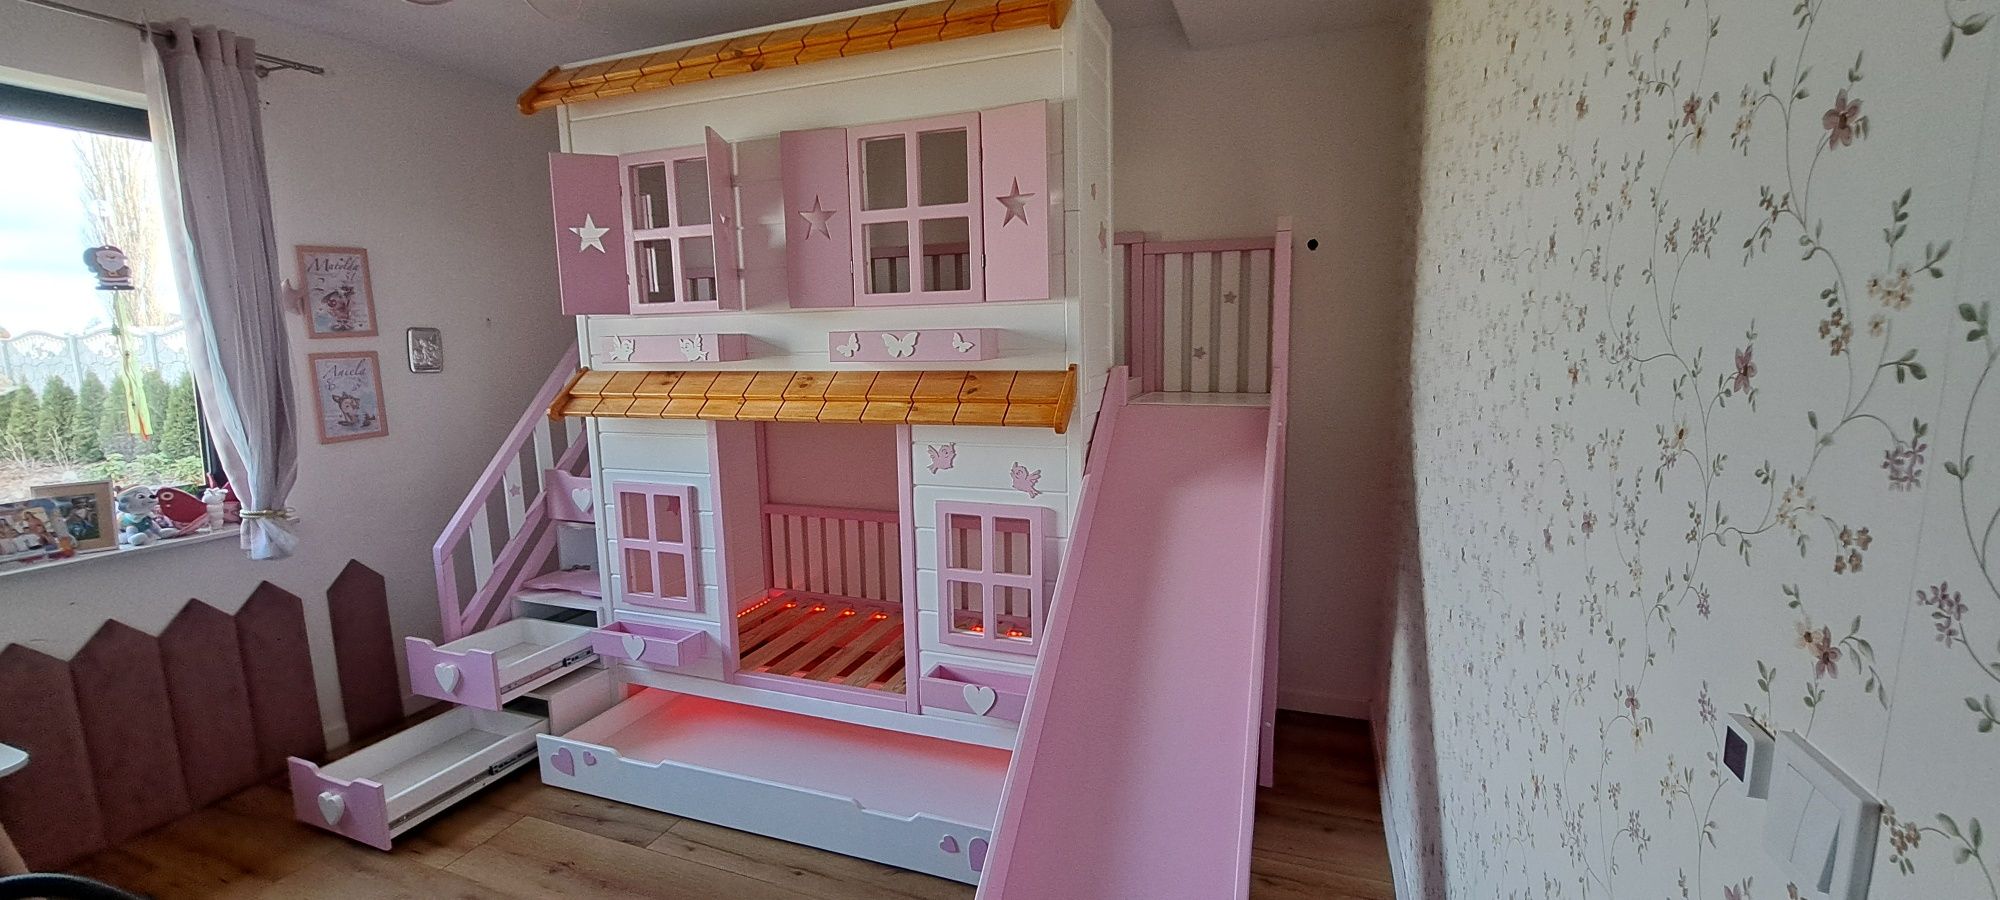 Łóżeczko łóżko piętrowe drewniane domek dla dziecka